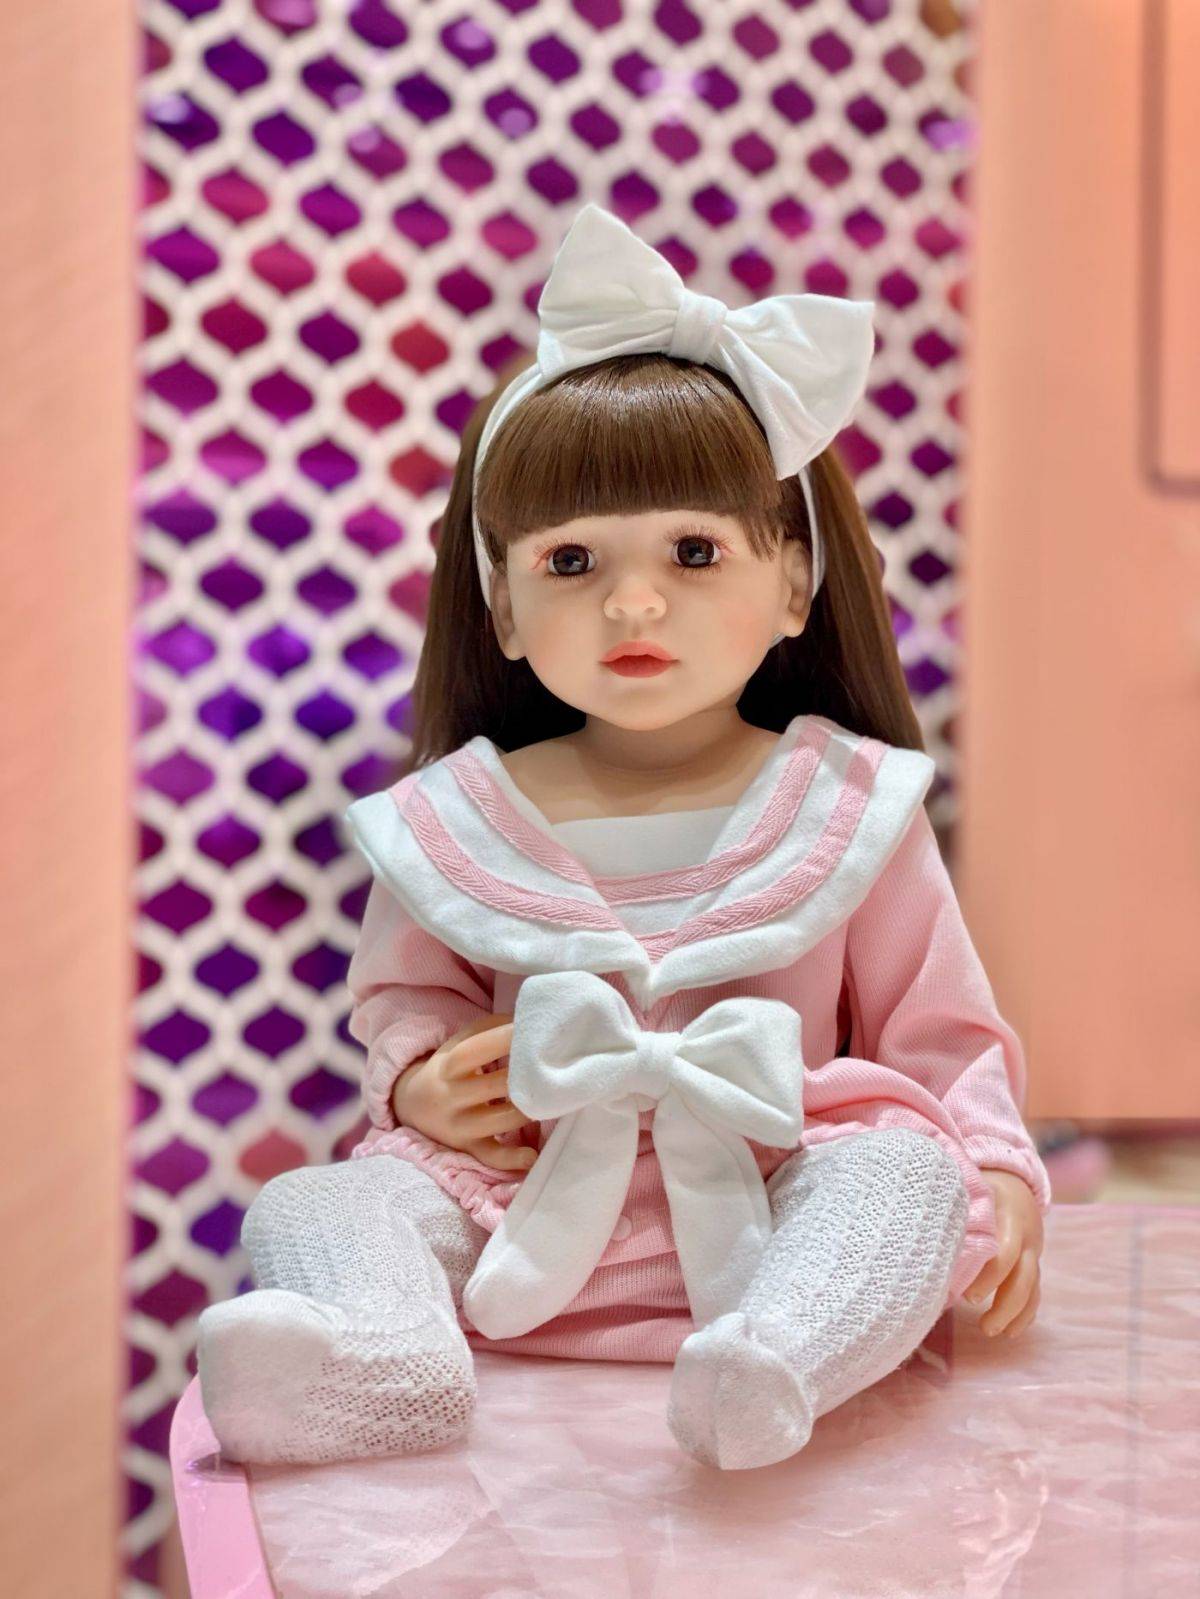 Reborn Baby Dolls Silicone Cute Soft Baby Doll Fashion Bebe Reborn Dolls 55cm Baby Toys for Girls (10)